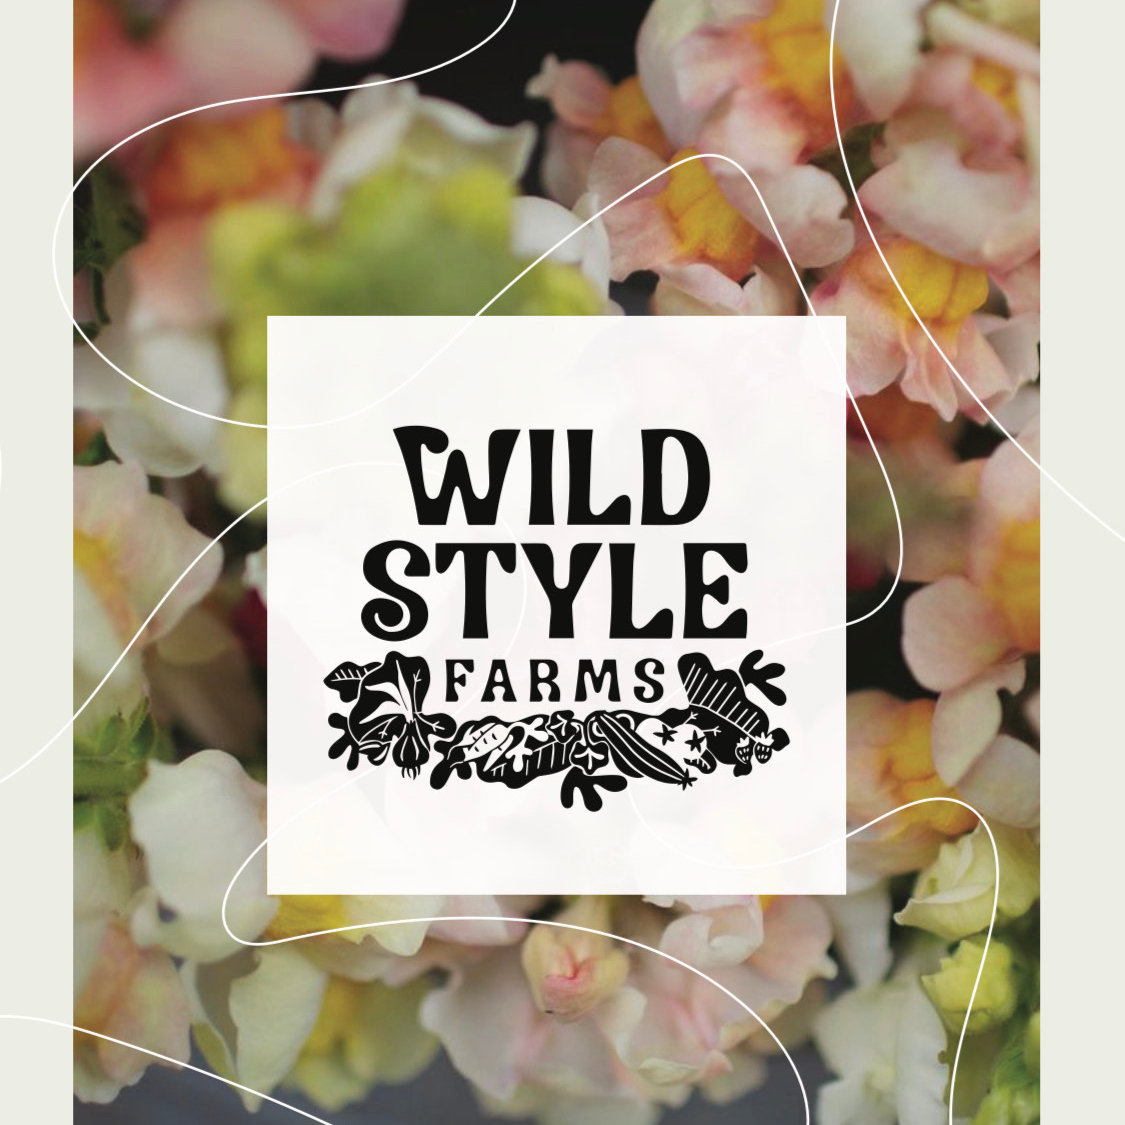 Wild Style Farms